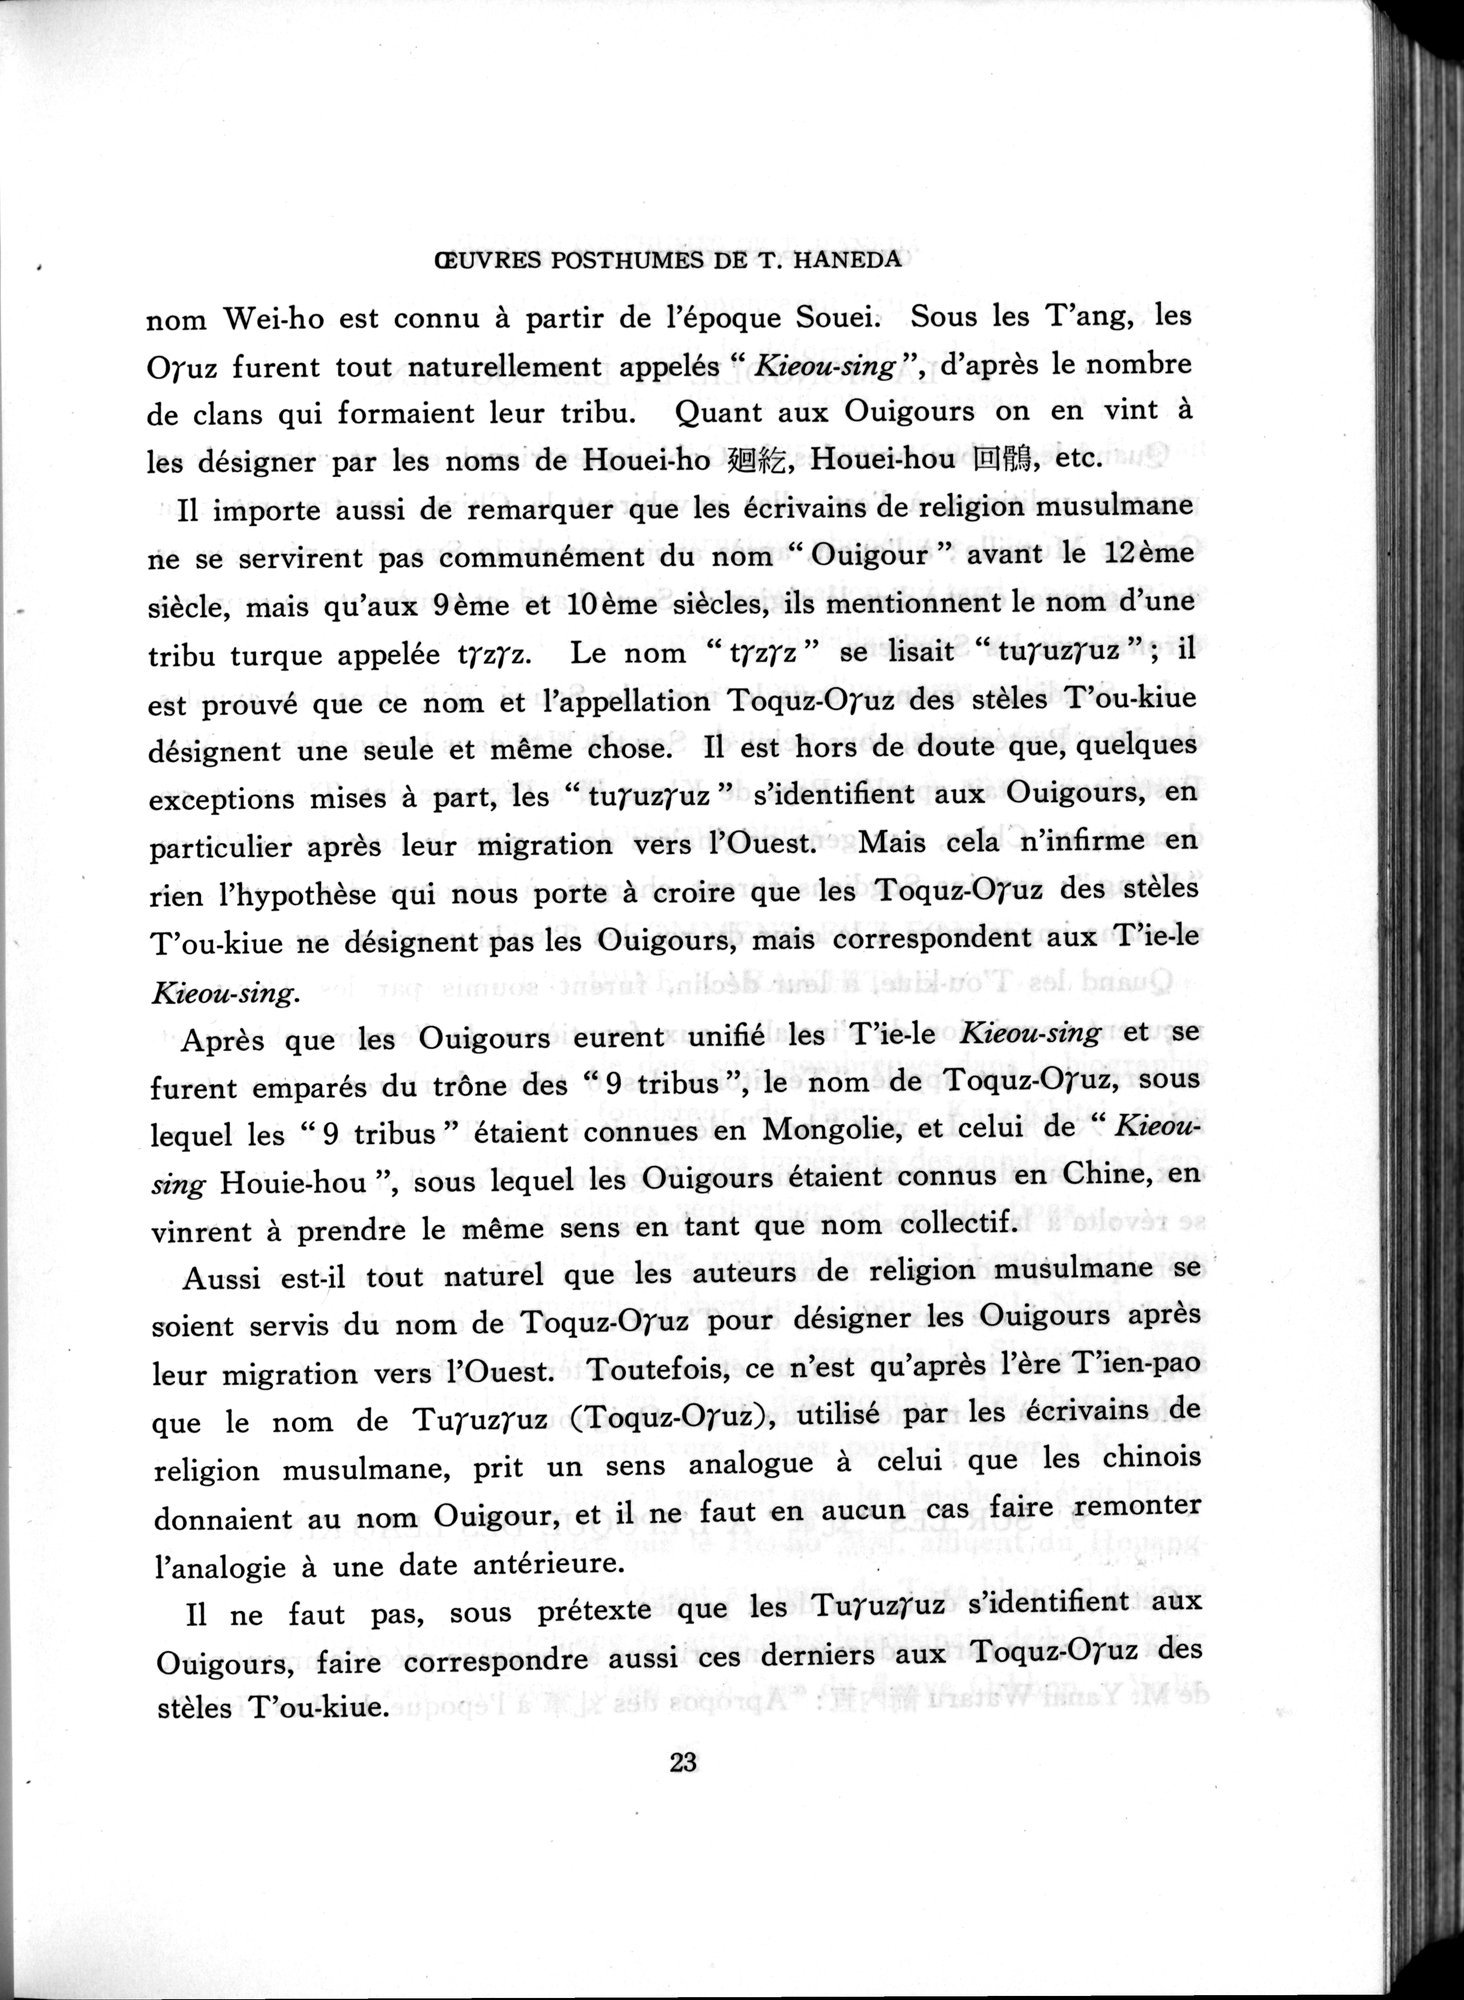 羽田博士史学論文集 : vol.2 / Page 906 (Grayscale High Resolution Image)